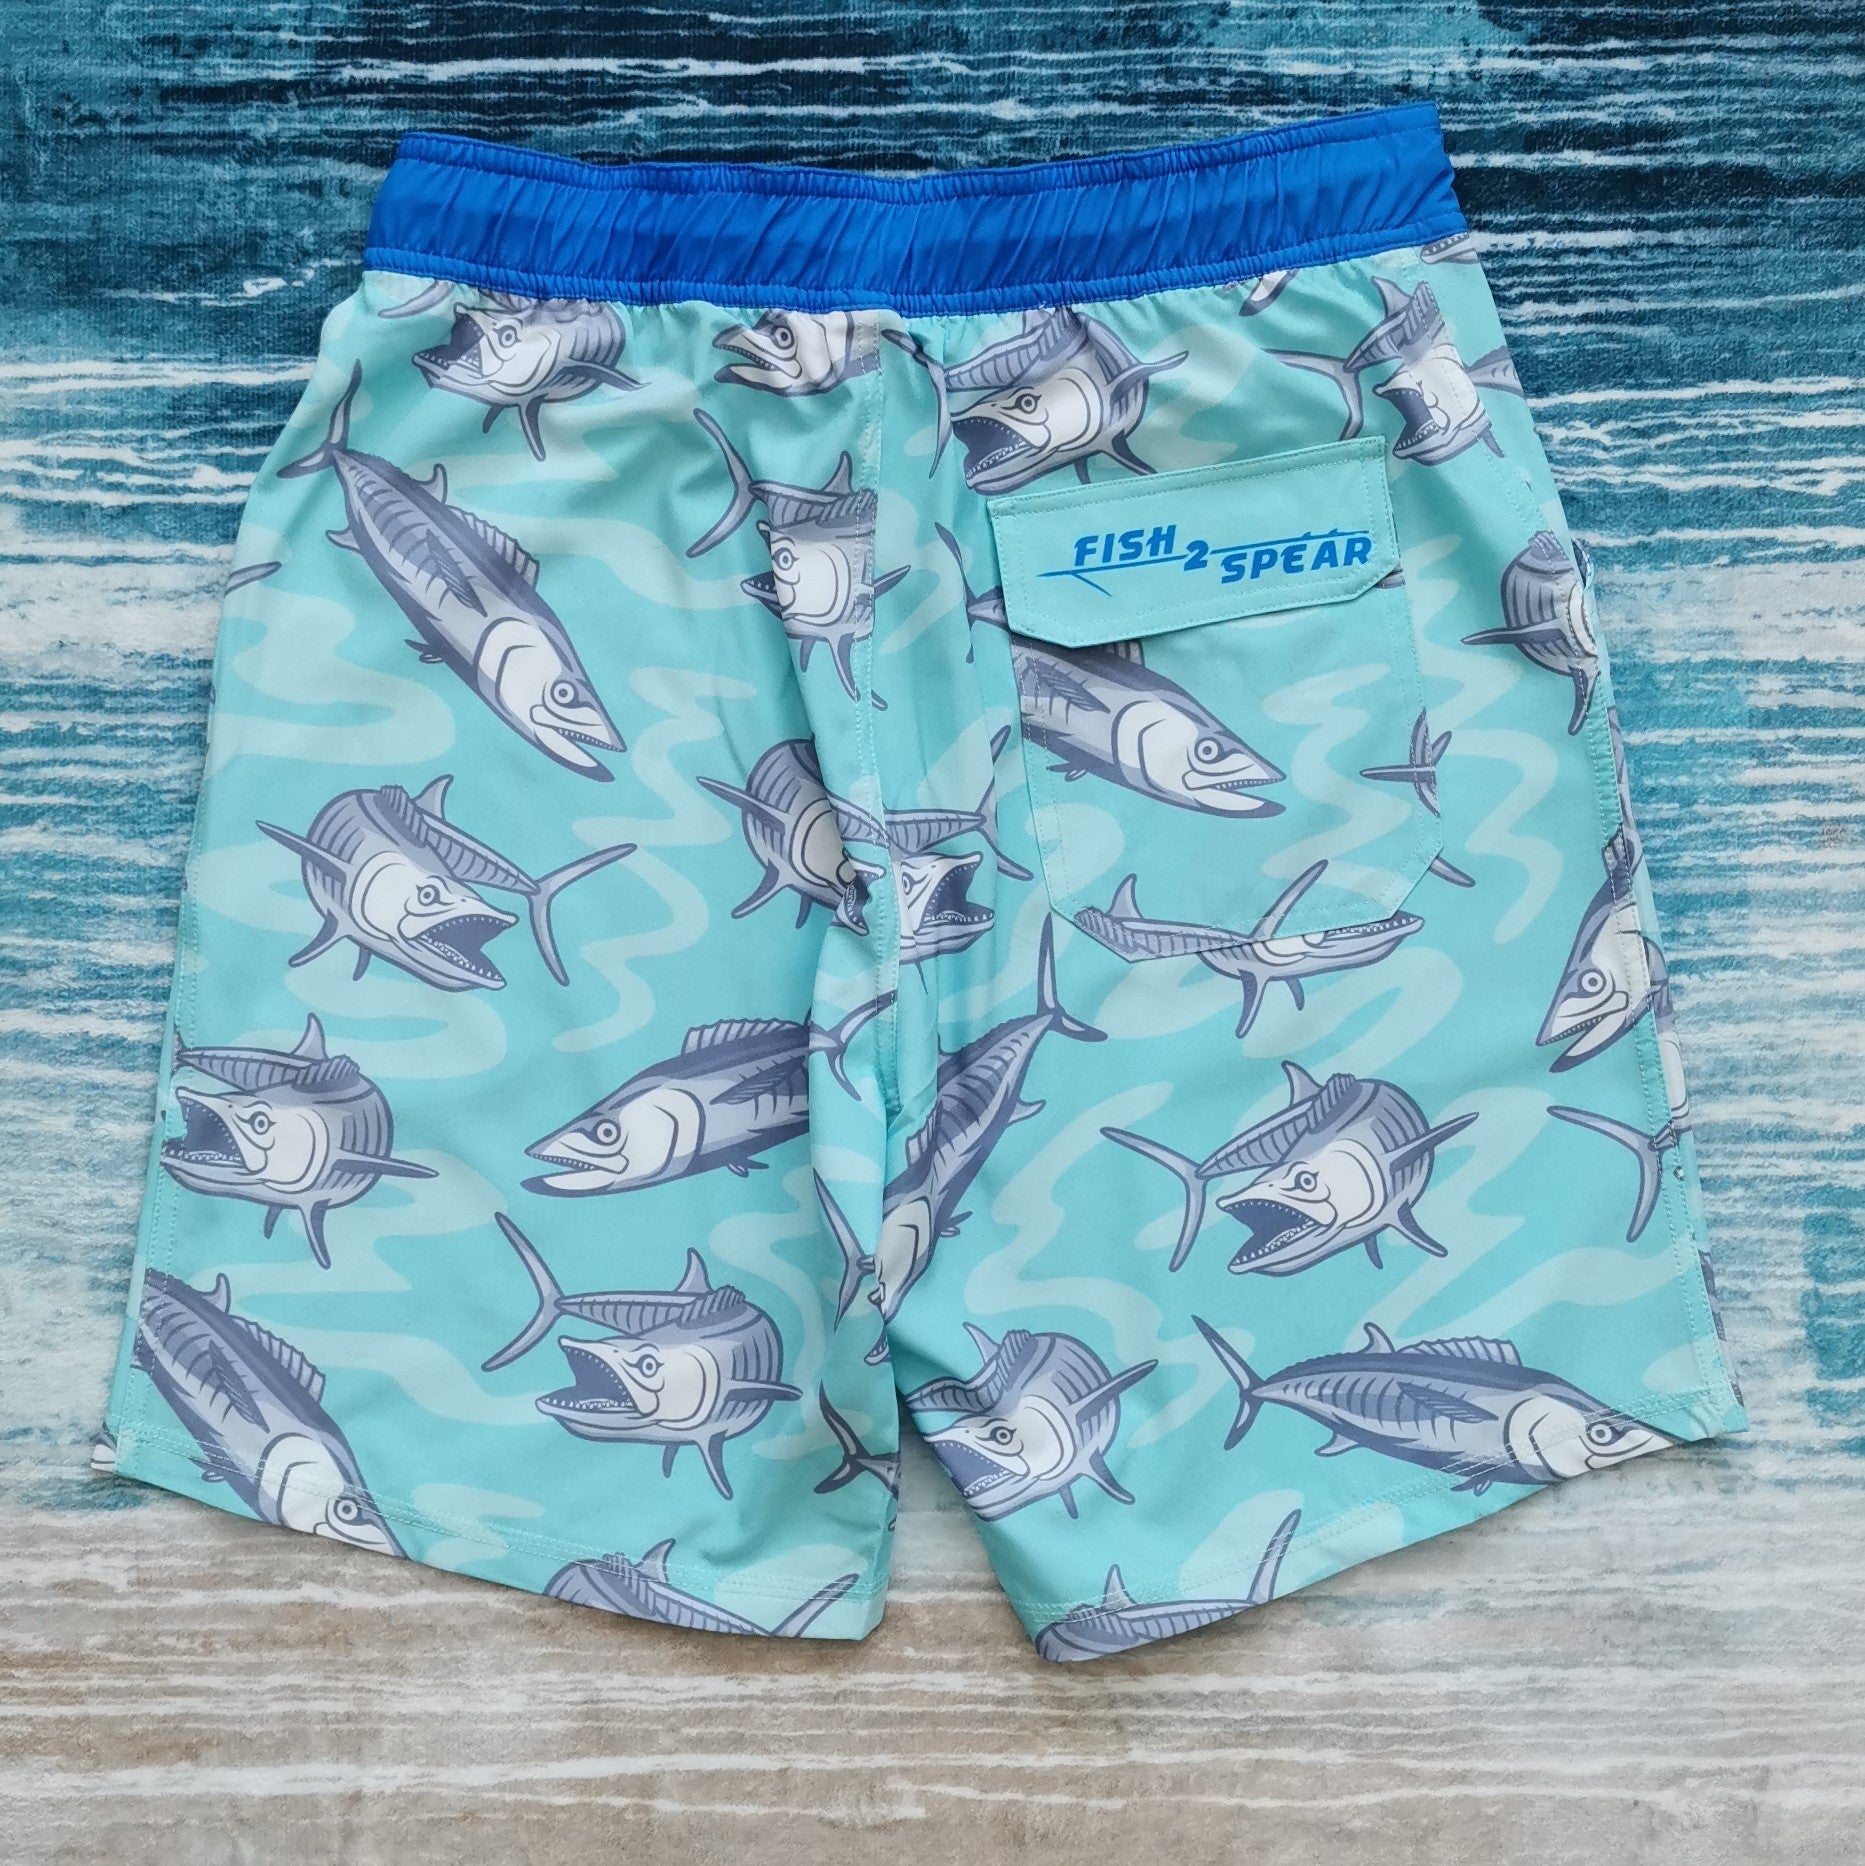 Kingfish - Fishing Shorts